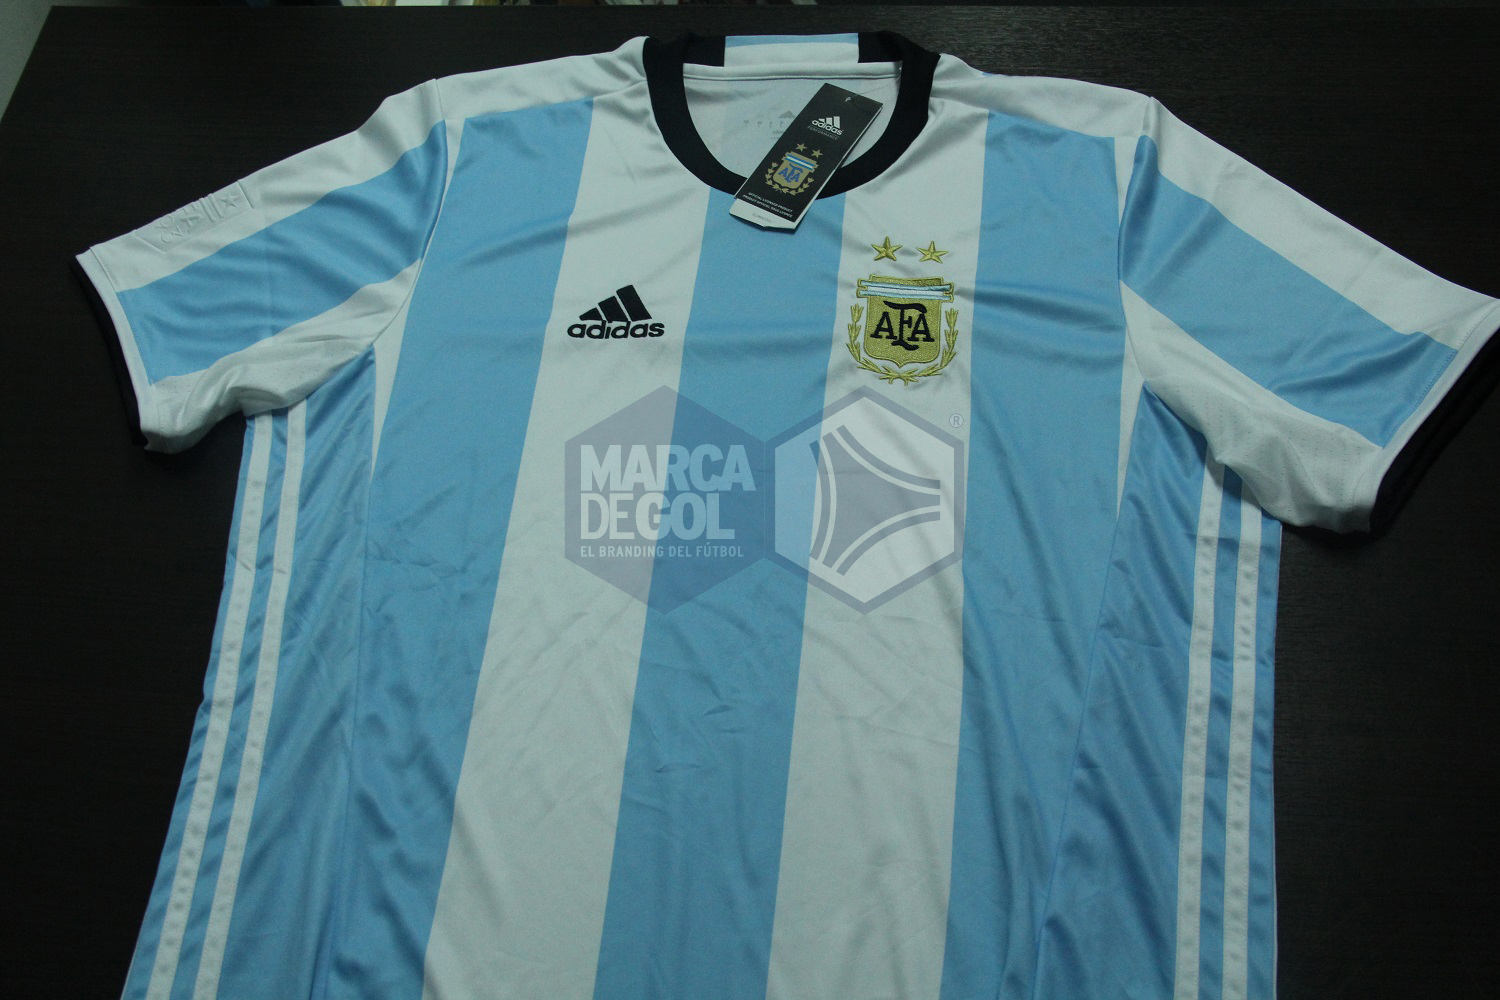 Camiseta Argentina adidas 2016 review 00